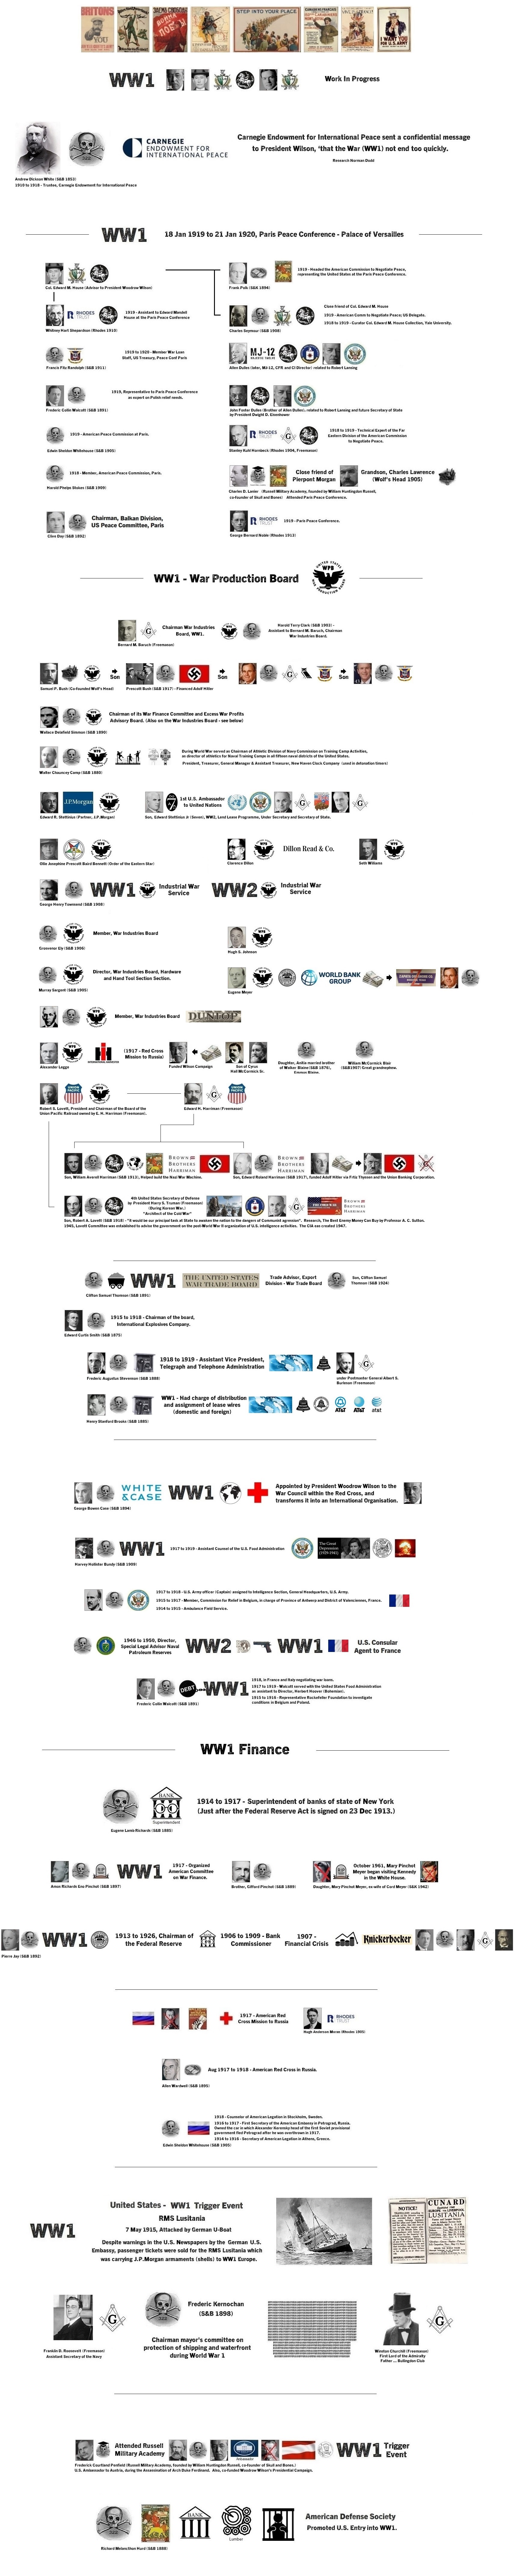 WW1_Timeline.jpg